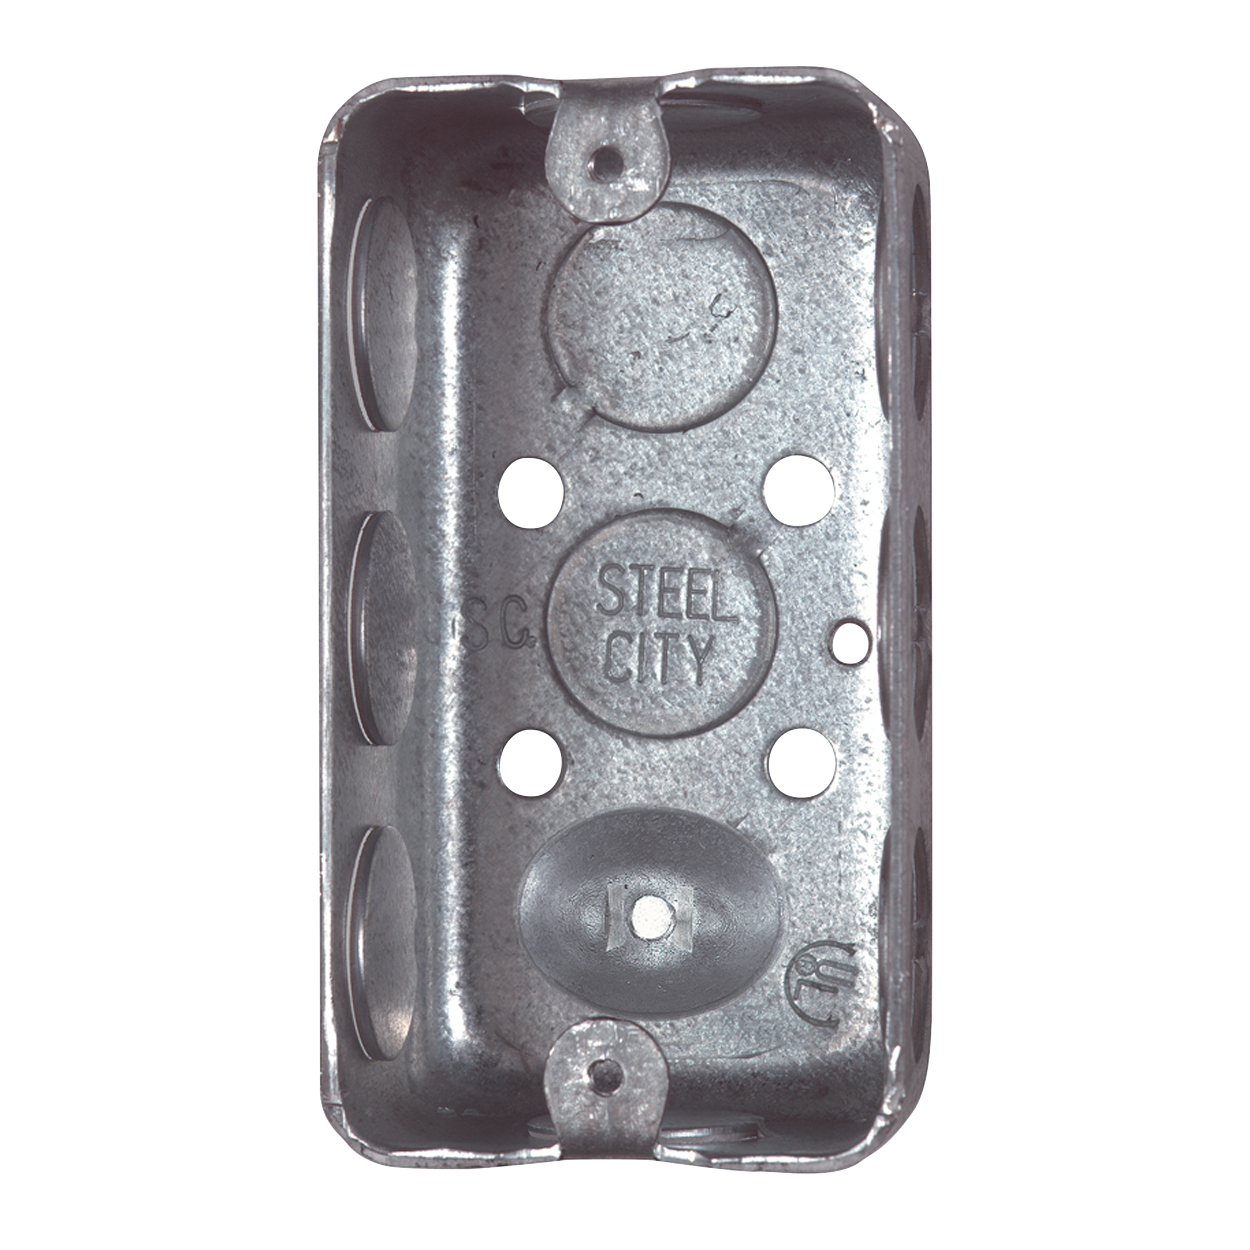 Steel-City 58371-1/2 Steel Handy/Utility Box, 4